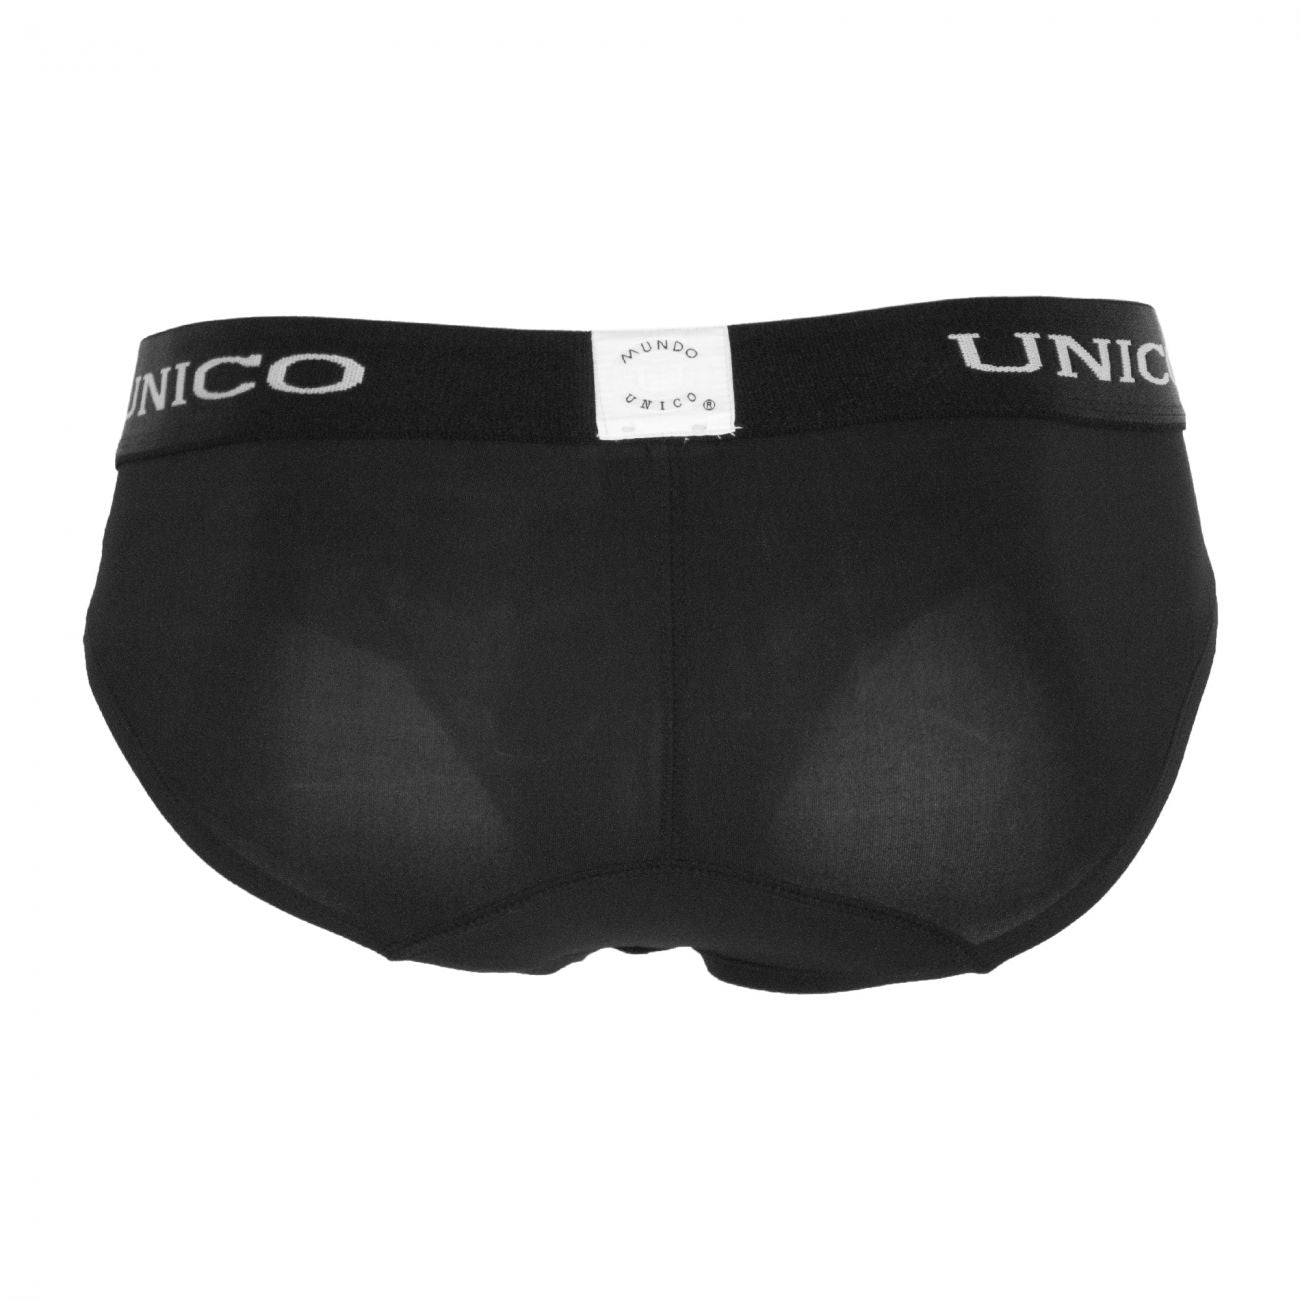 Unico 1600050399 Briefs Intenso Black